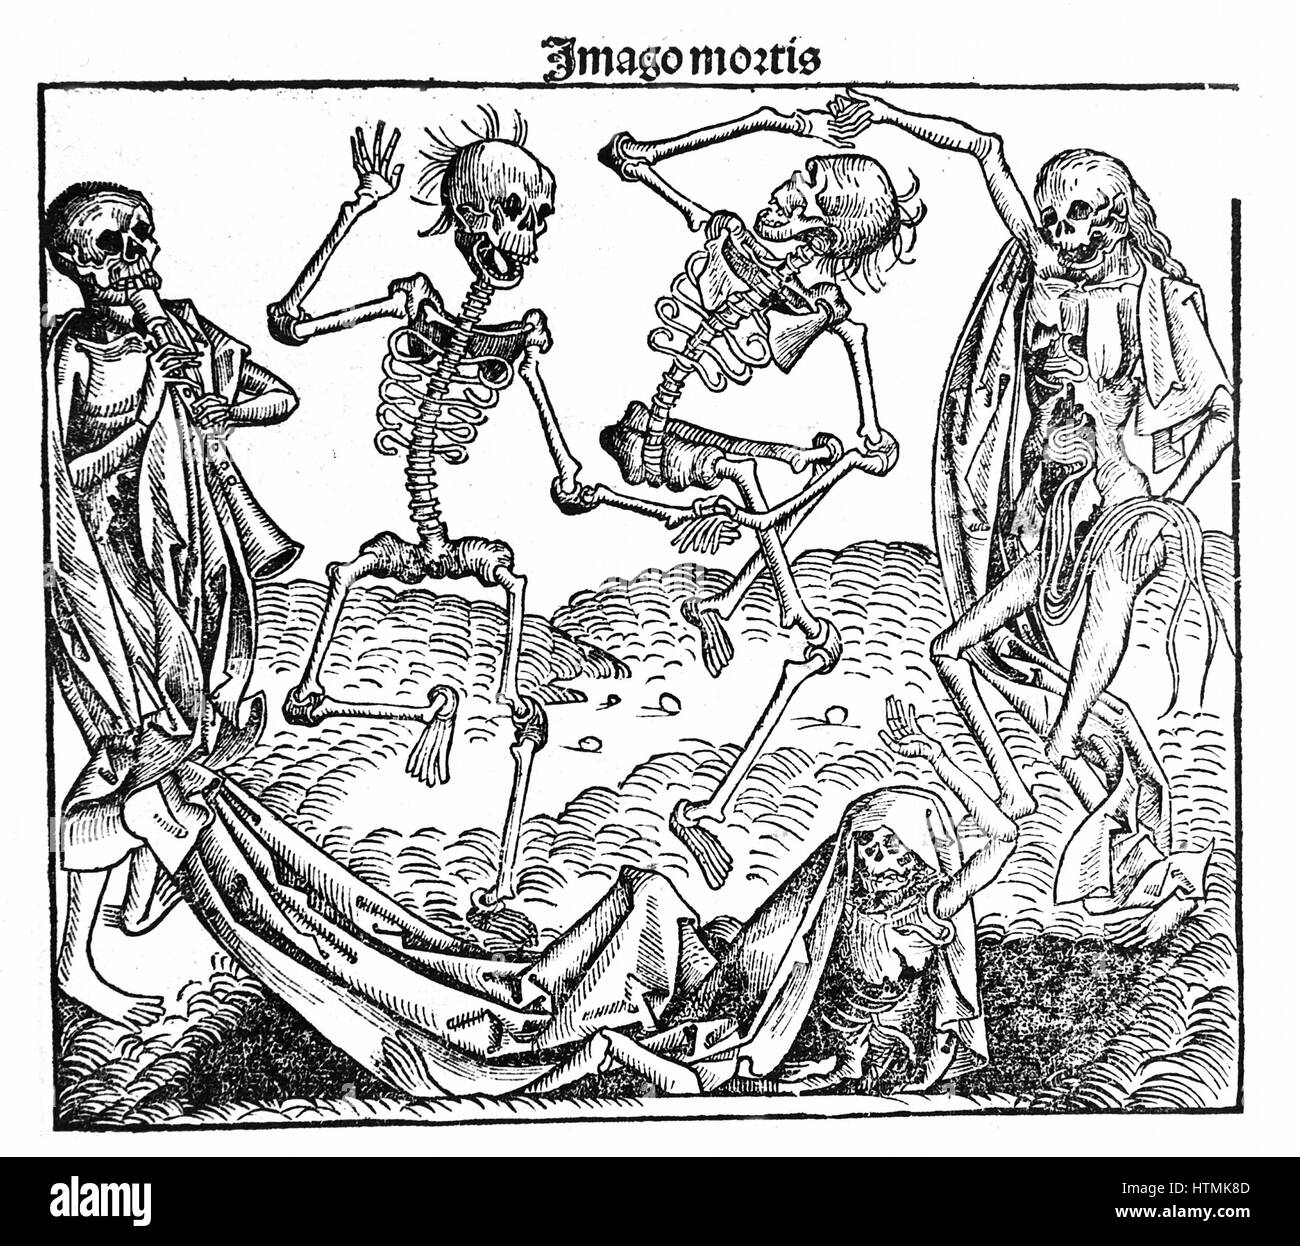 La morte trionfante. Da Hartmann Schedel "Liber chronicarum mundi' (Cronaca di Norimberga), 1493. Scheletri anatomicamente impreciso, in particolare sulle ossa del bacino. Xilografia Foto Stock